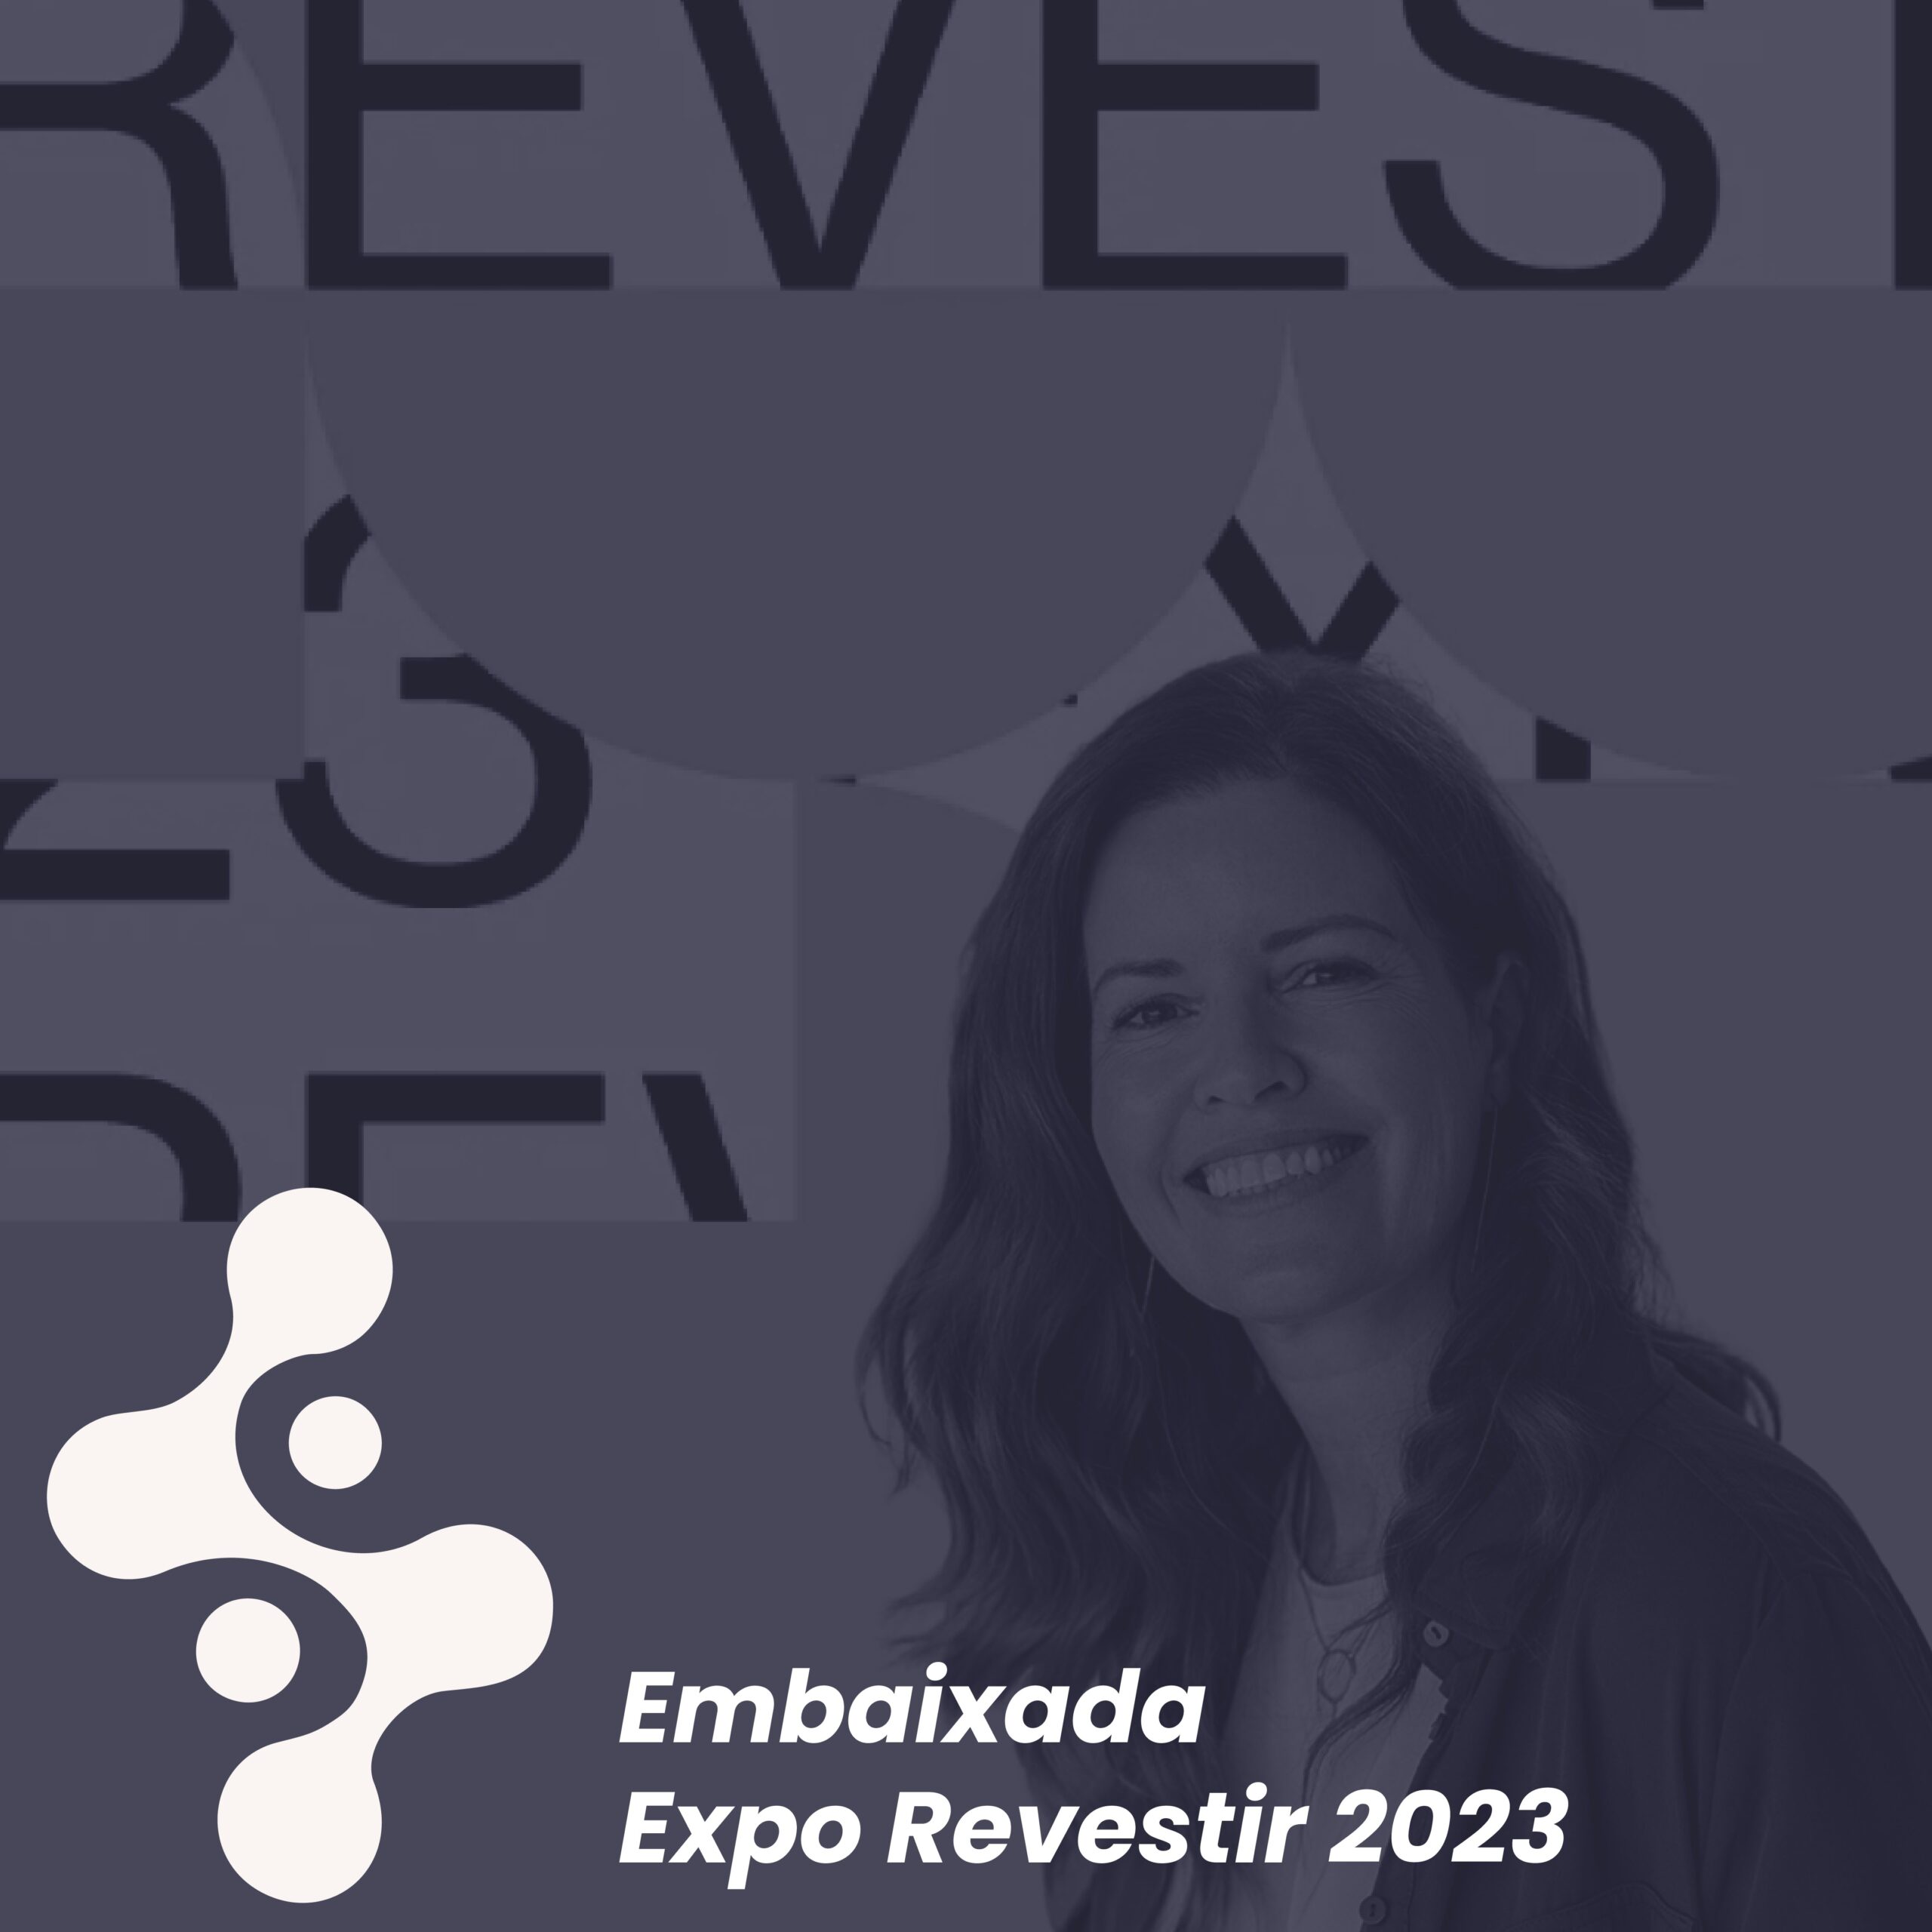 Conheça os especialistas escolhidos para a Embaixada Expo Revestir 2023!